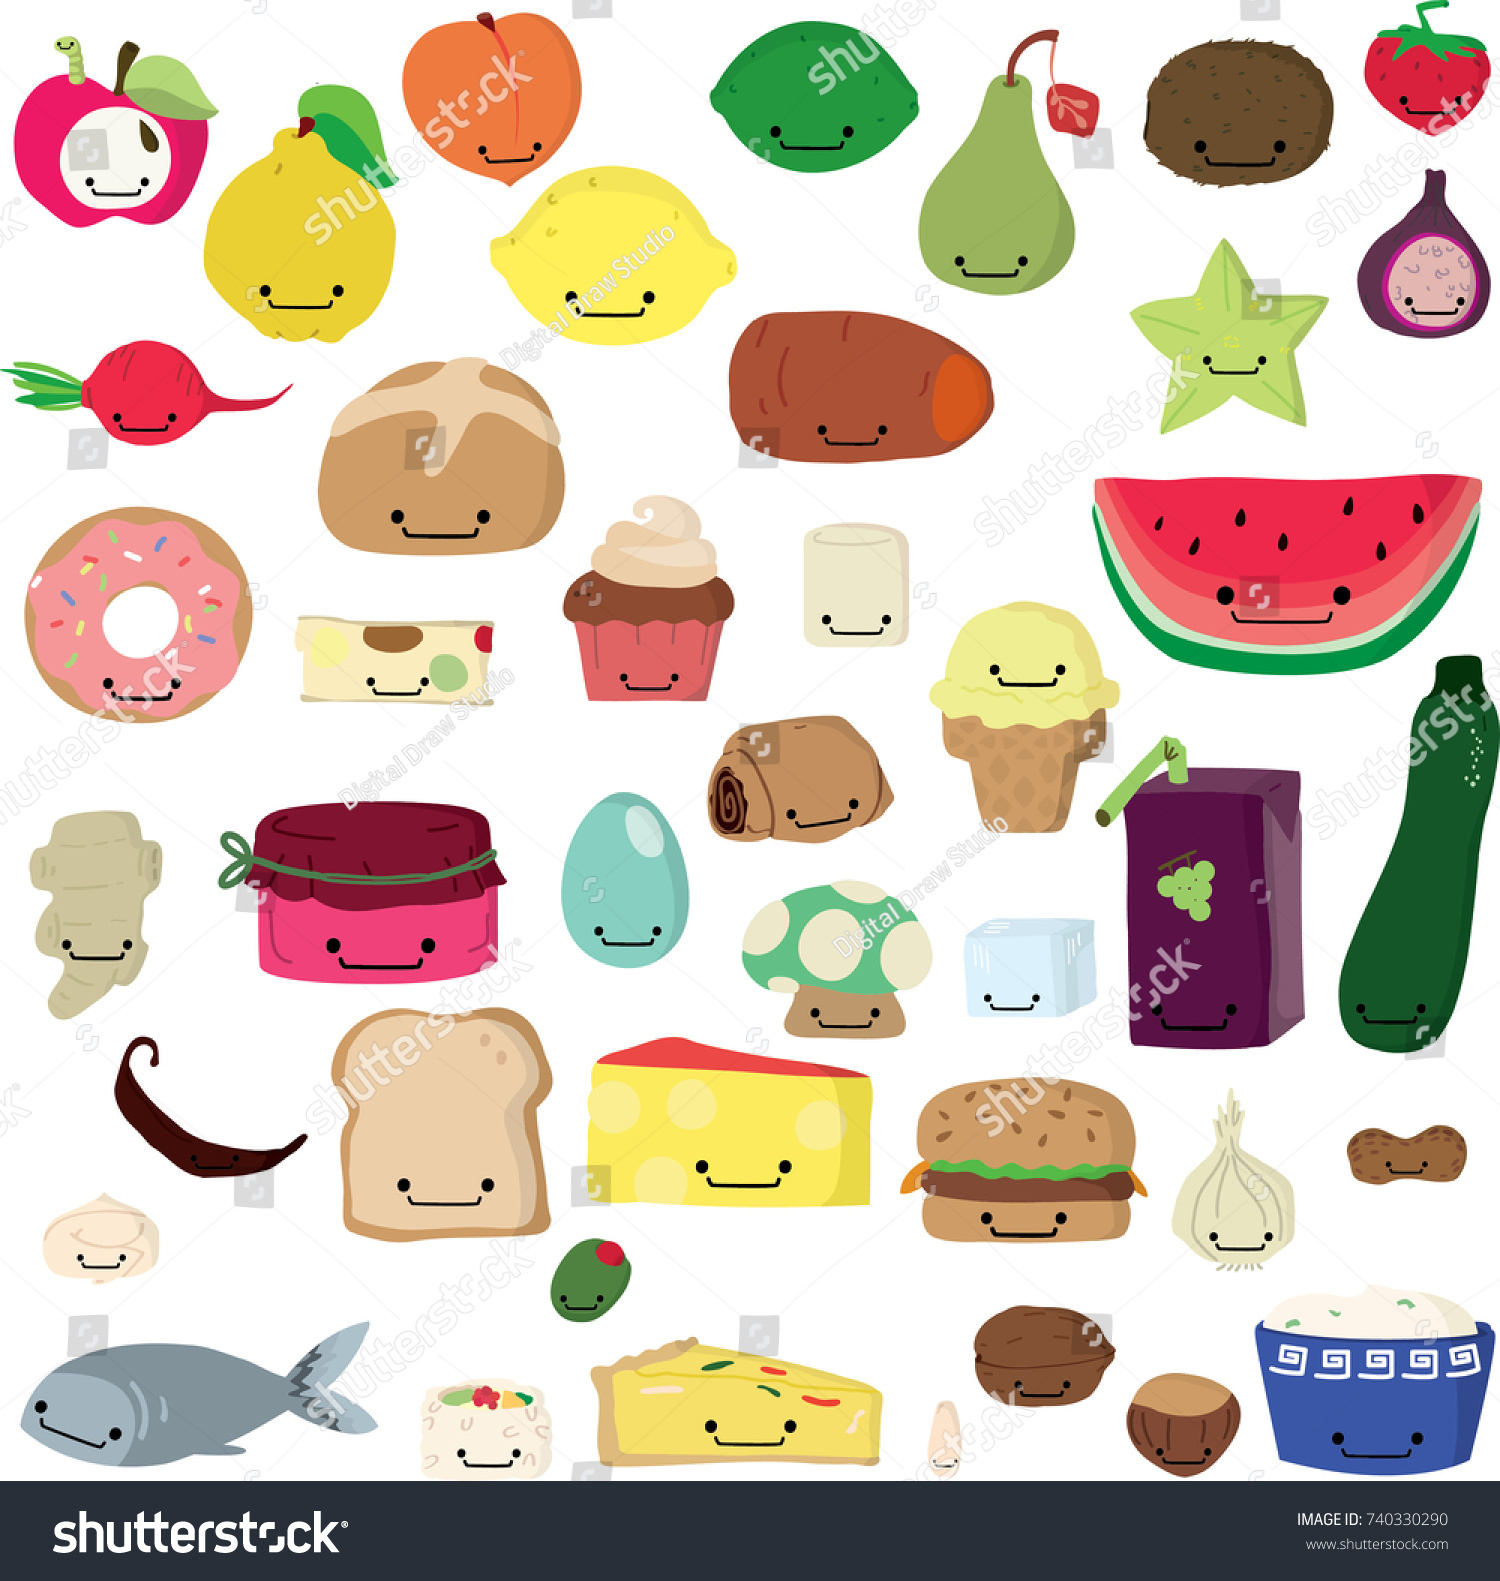 Image Vectorielle De Stock De Cute Freehand Fruit Vegetable Kawaii Colored 740330290